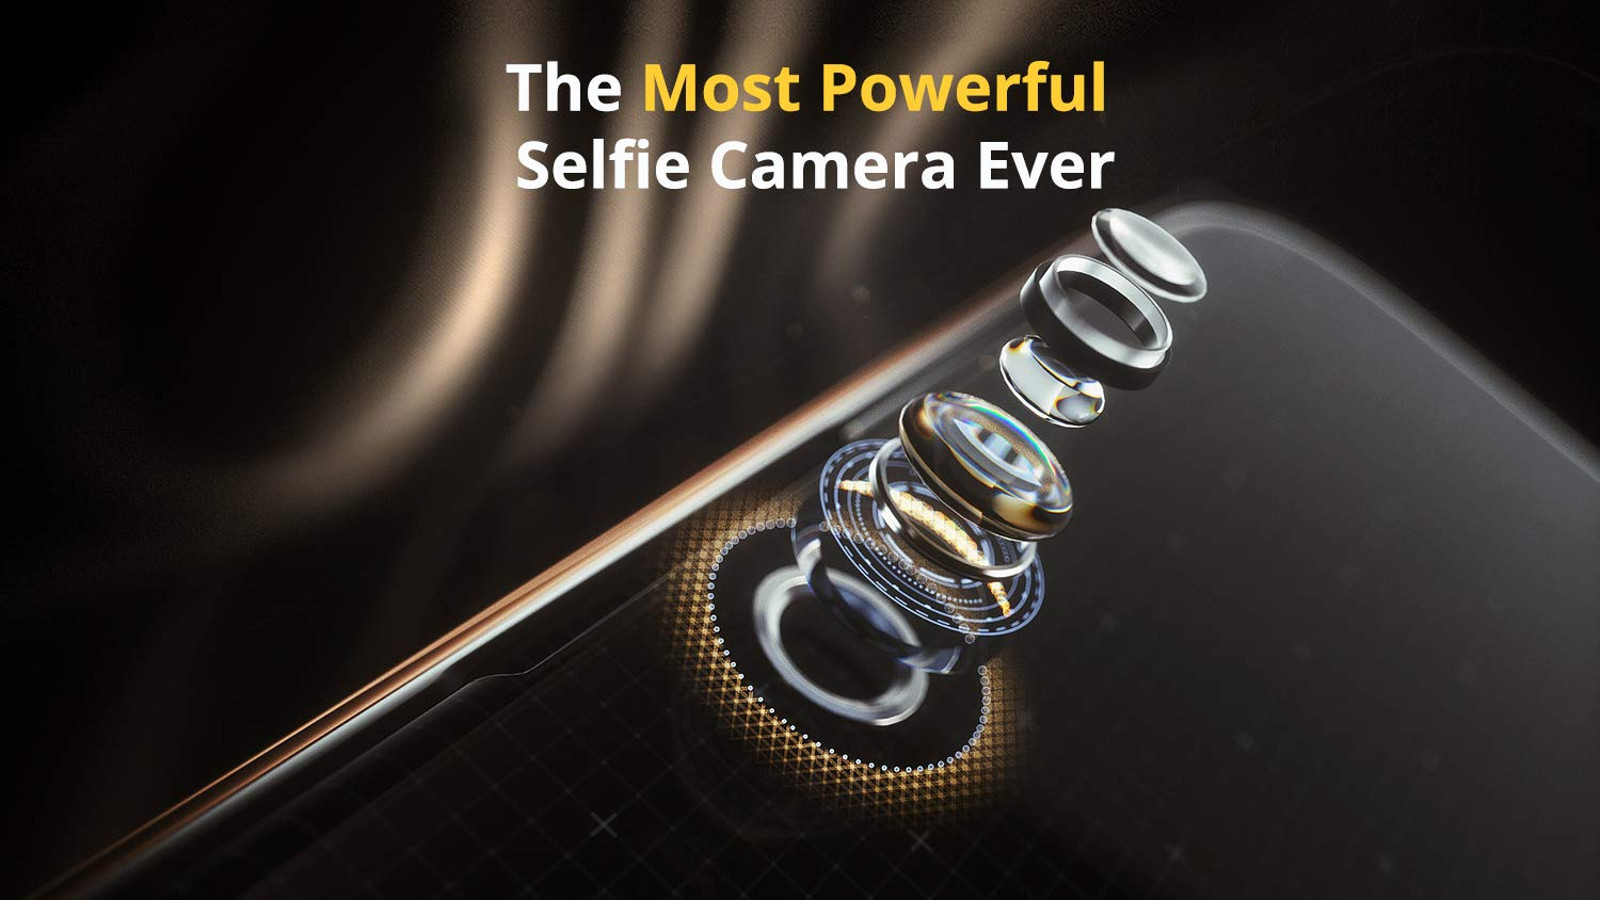 A teaser for the realme U1 selfie camera.